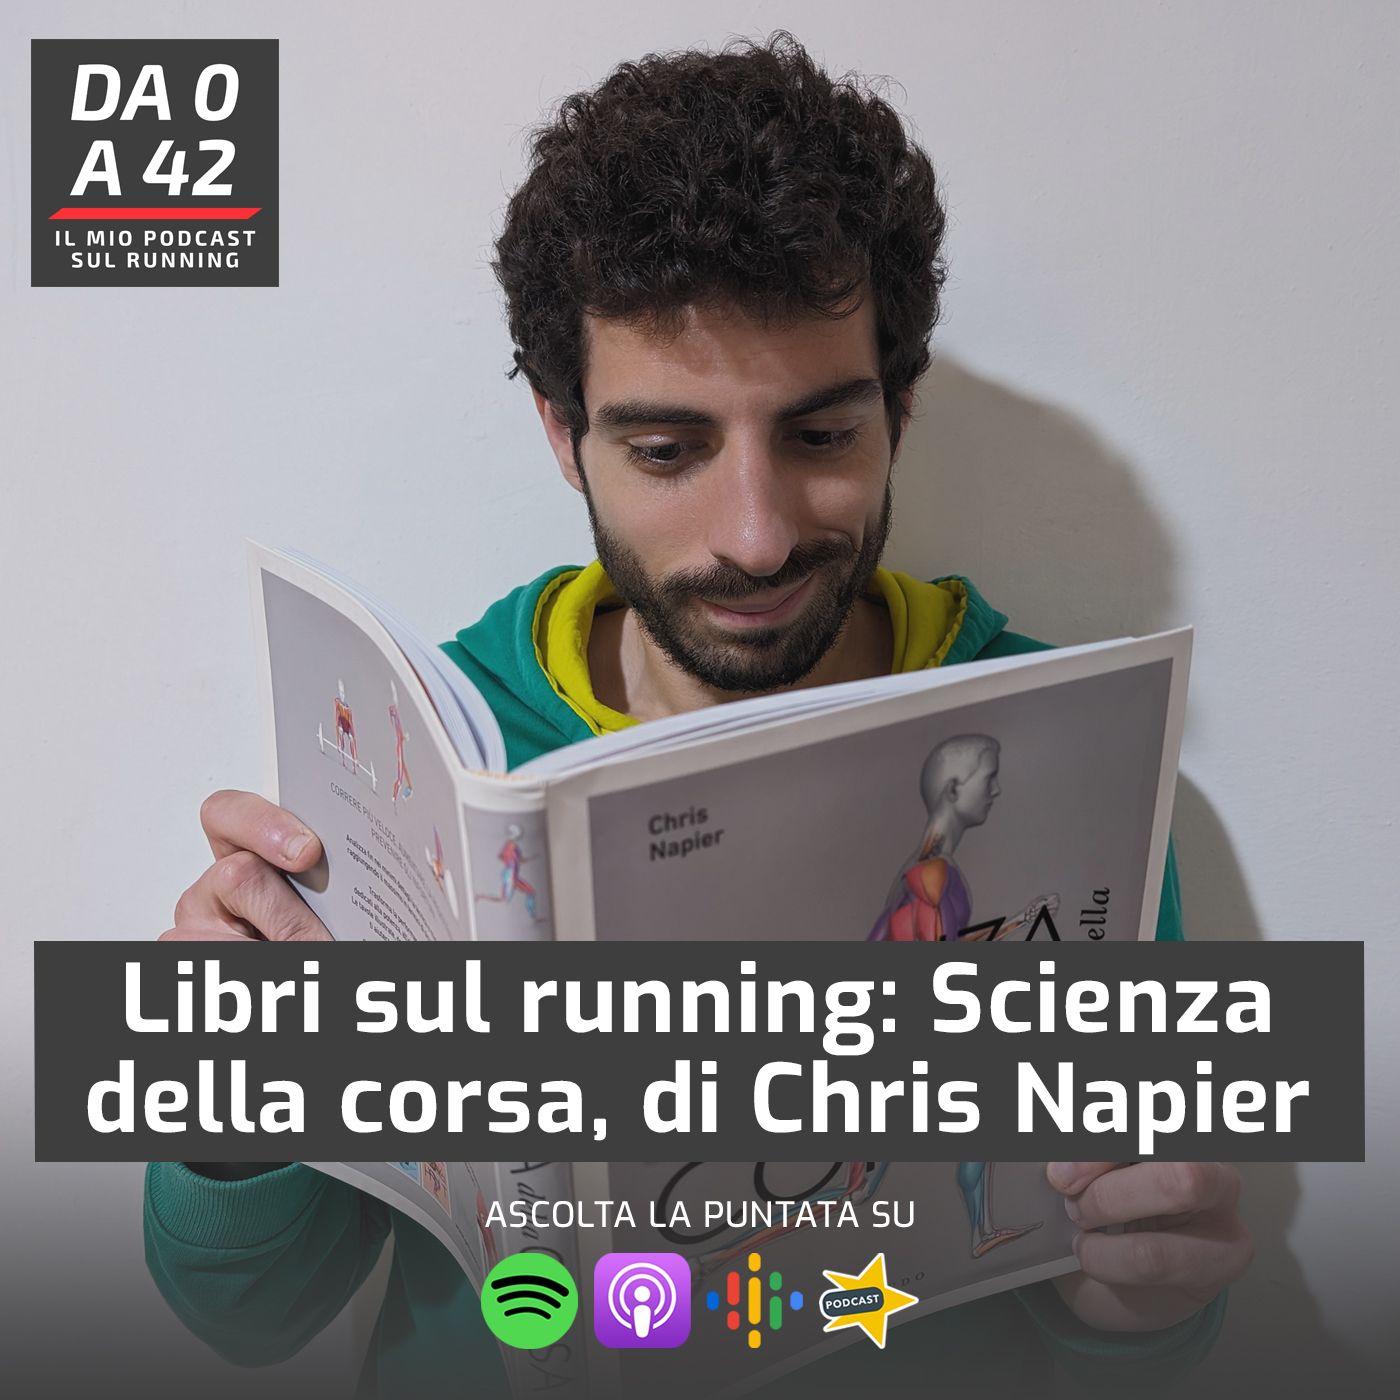 Libri sul running: Scienza della corsa, di Chris Napier